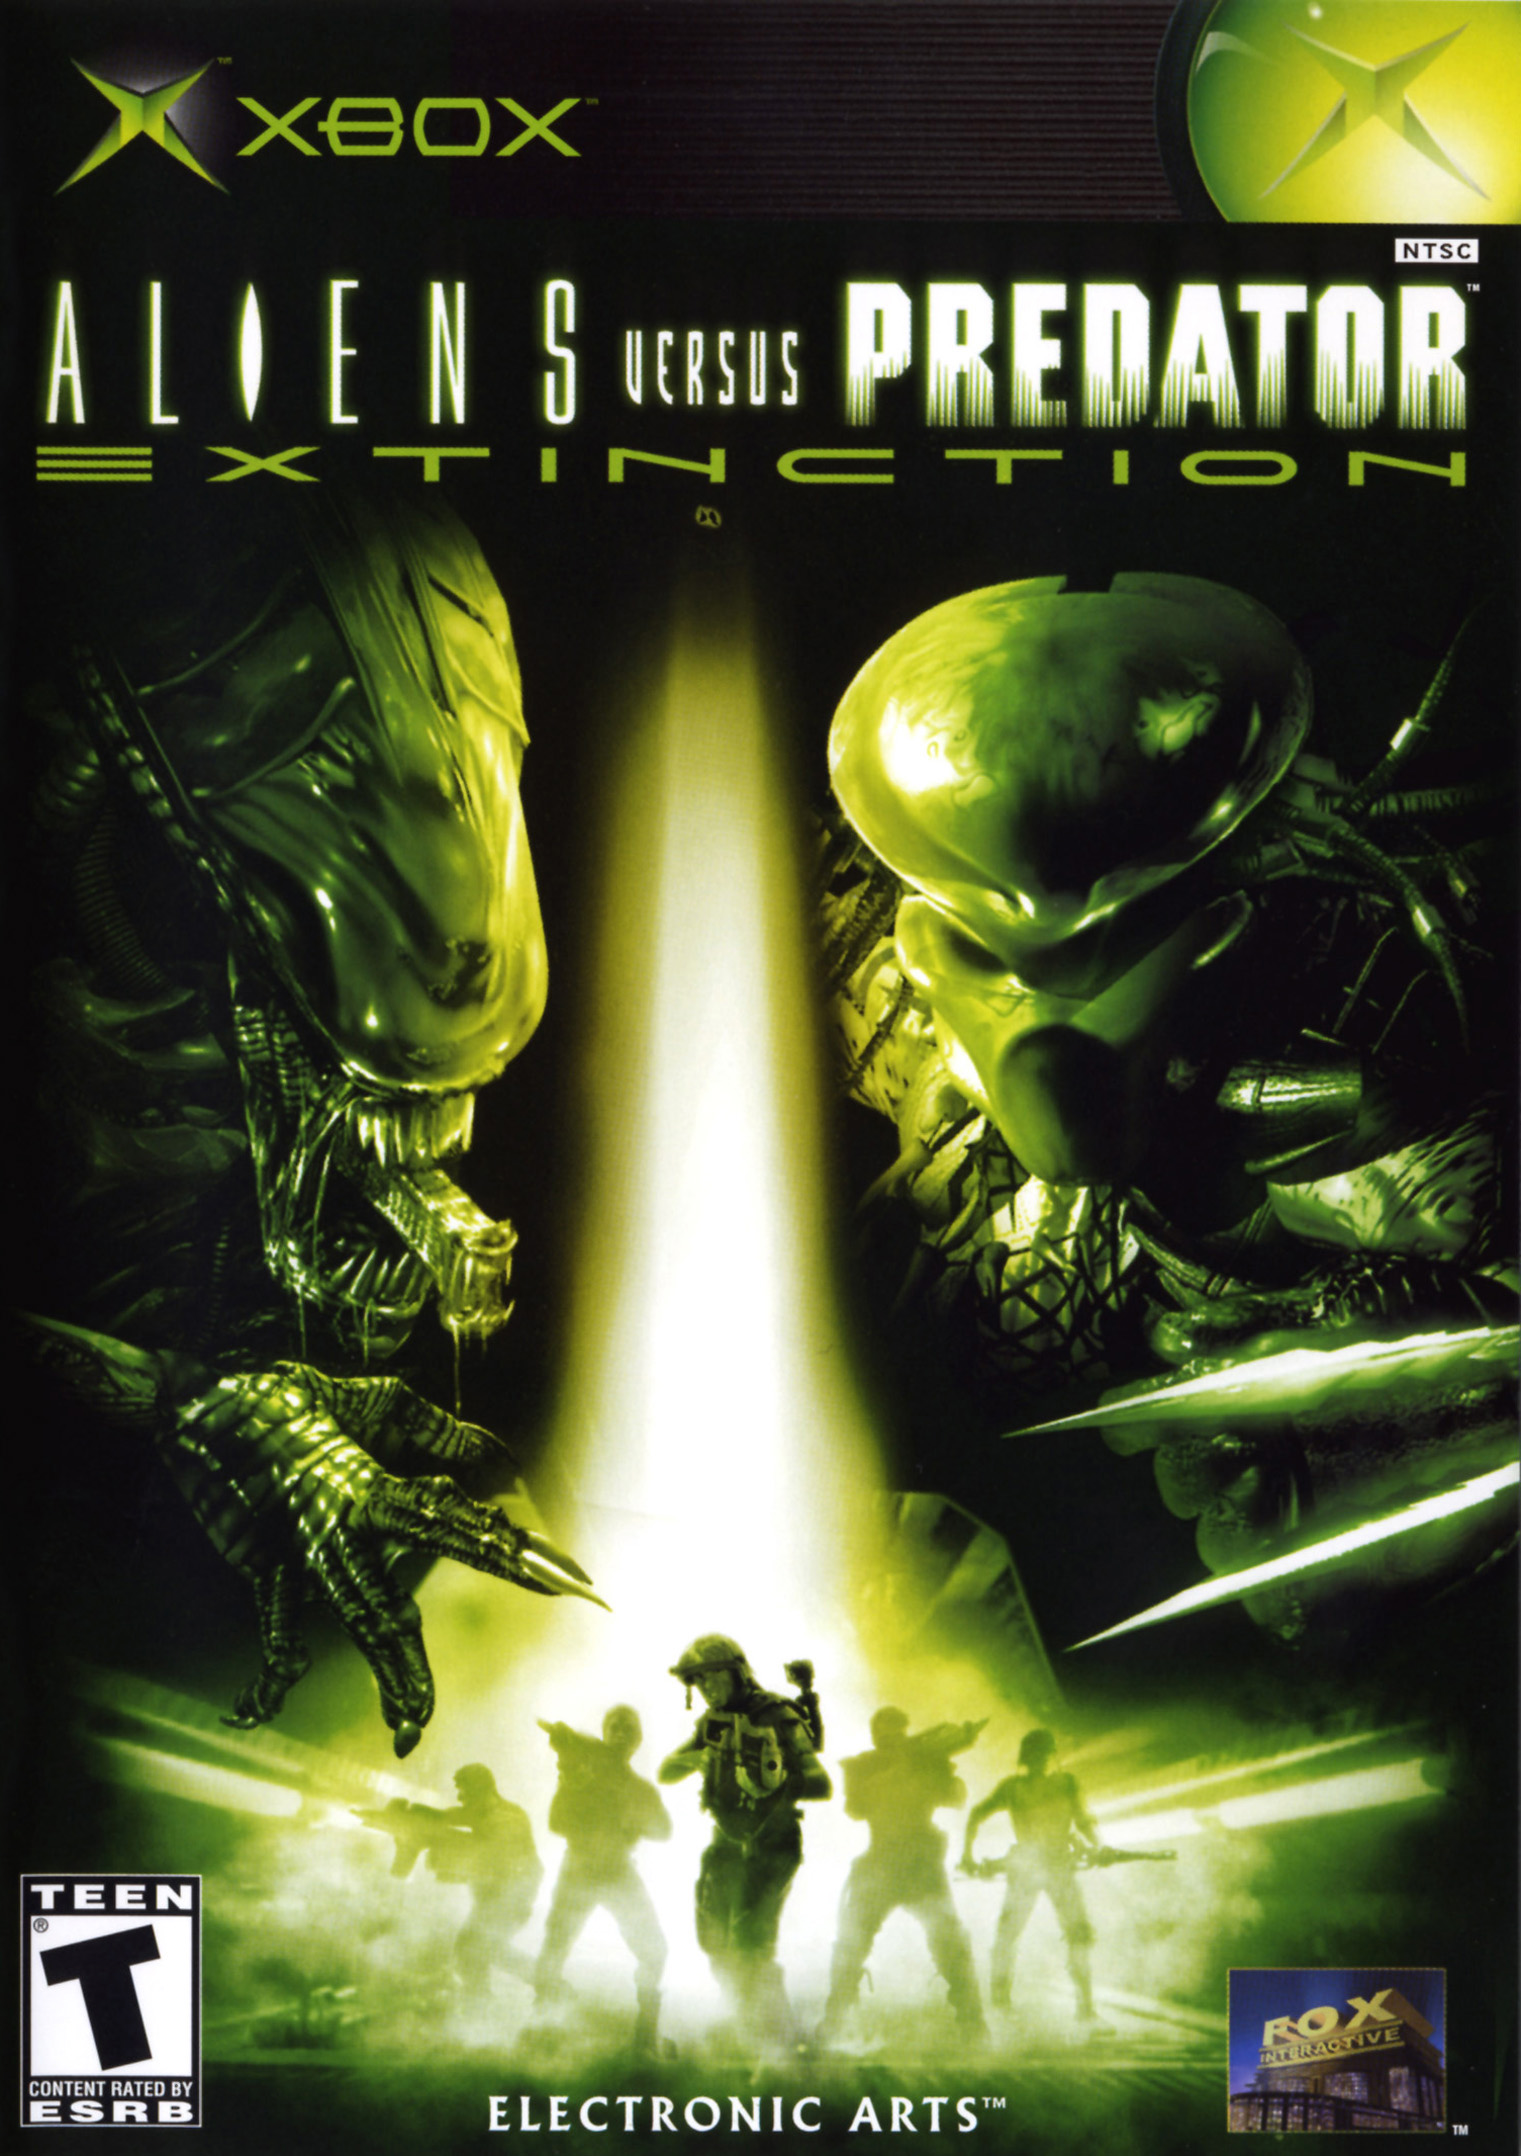 download alien vs predator 2022 movie